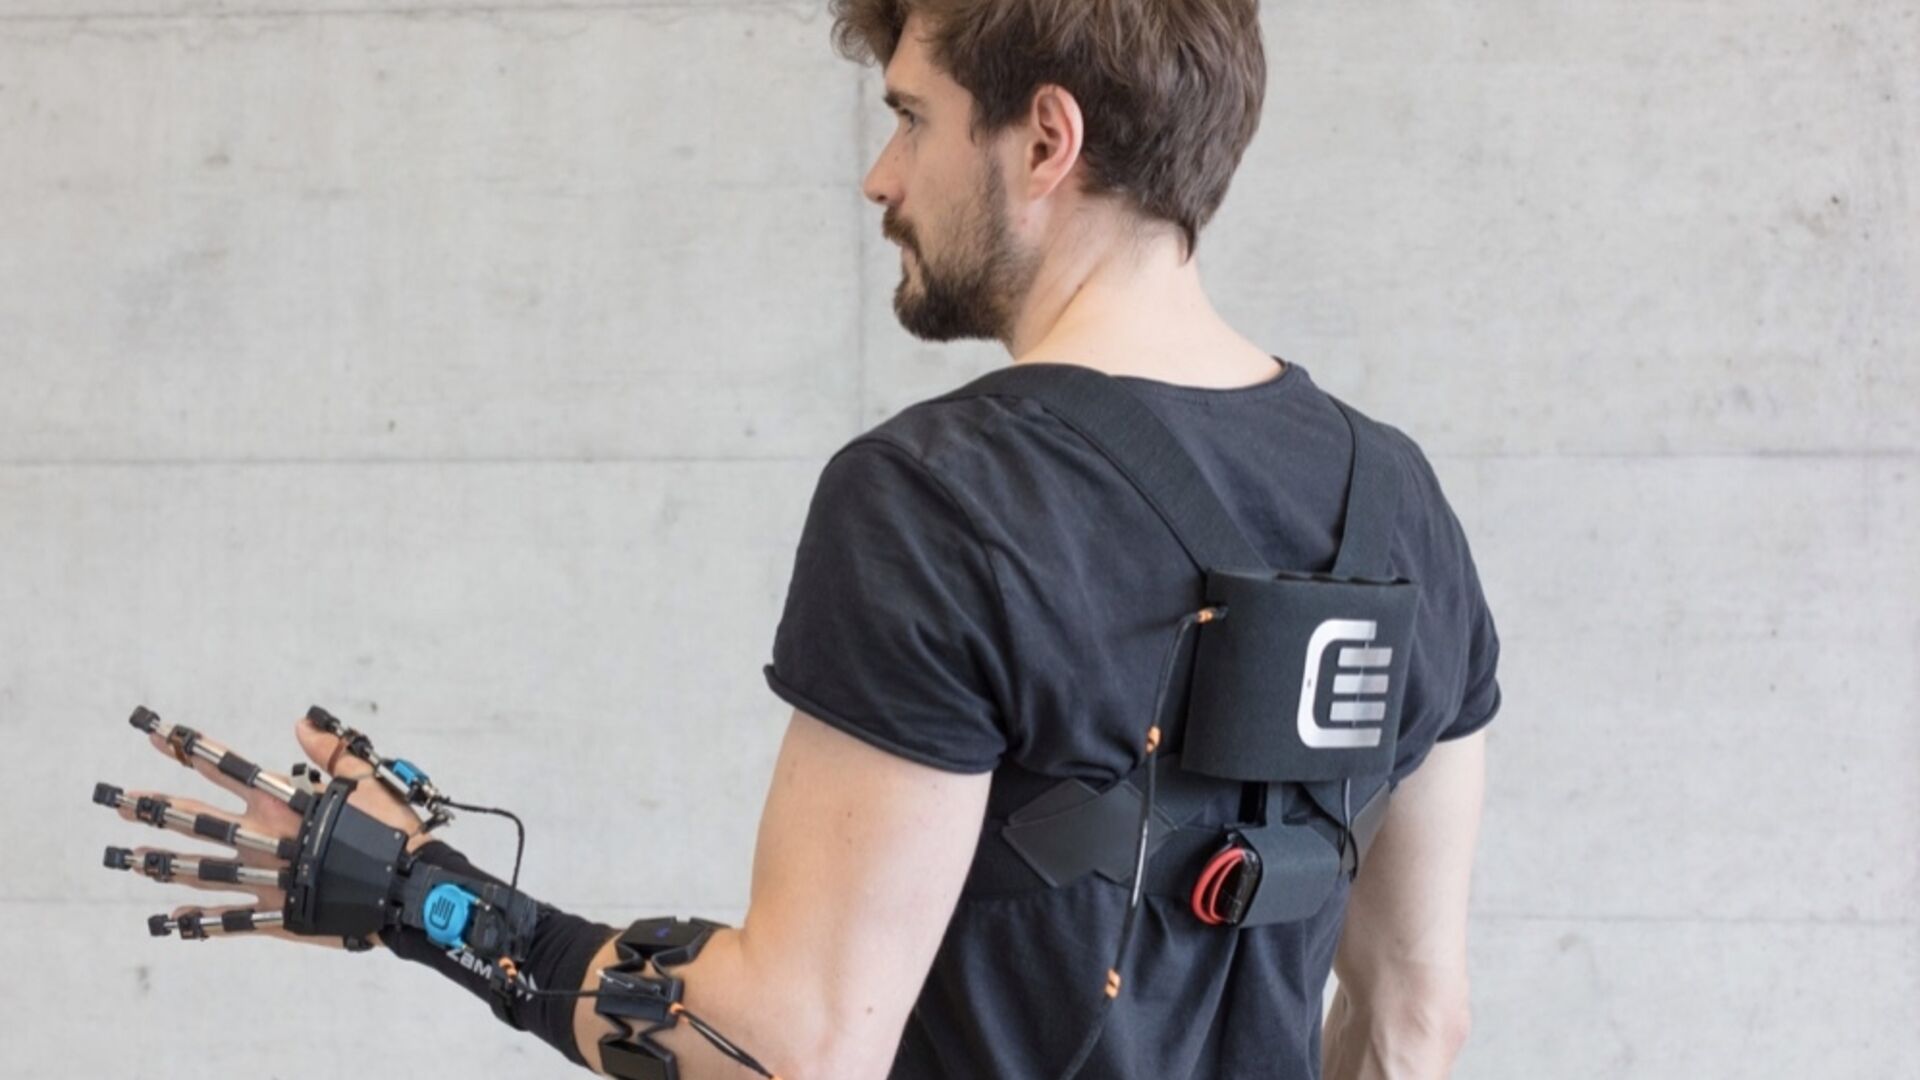 Robotica: protesi robotiche per migliorare qualità della vita